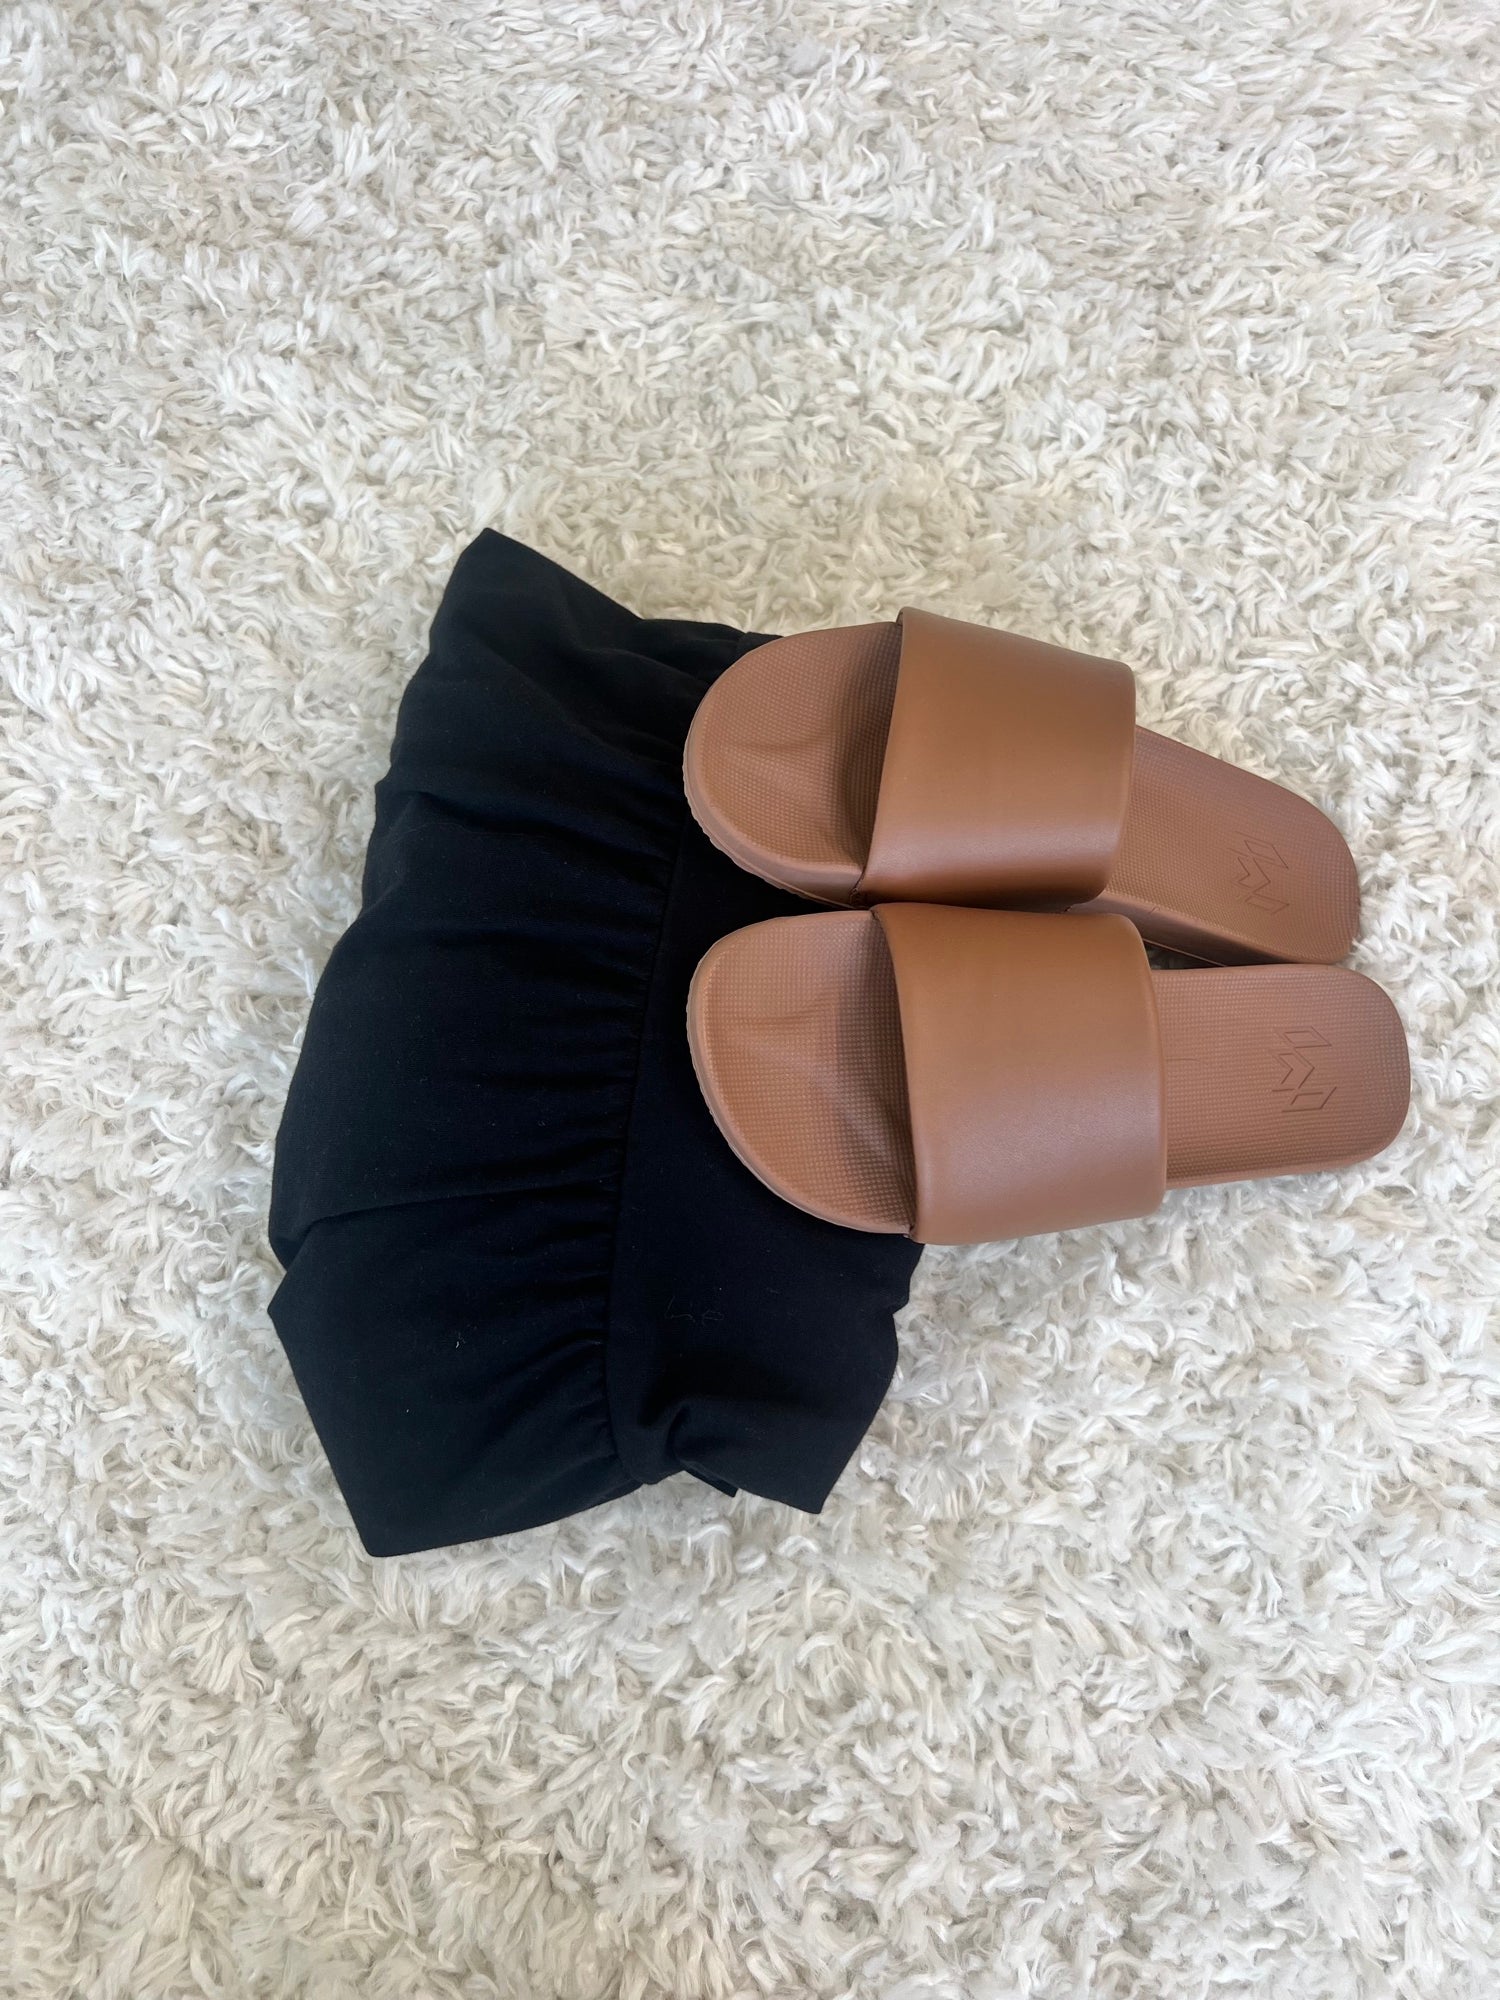 Slide Into Summer Pack: Sienna Sandal + Mystery Dress